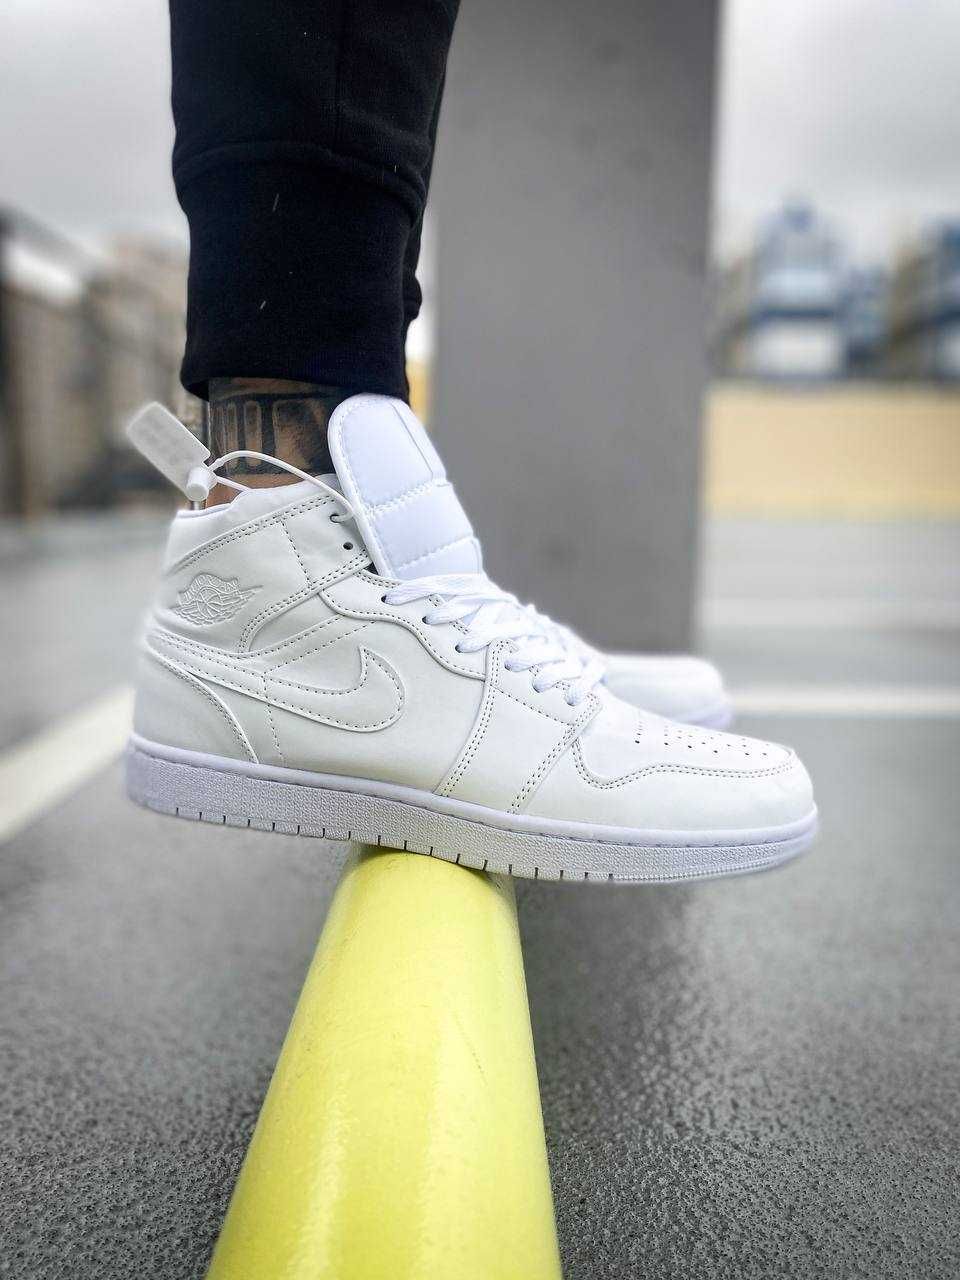 Sneakersy wysokie białe Nike Air Jordan 1 Mid "White" 36-45r Karaska •  OLX.pl